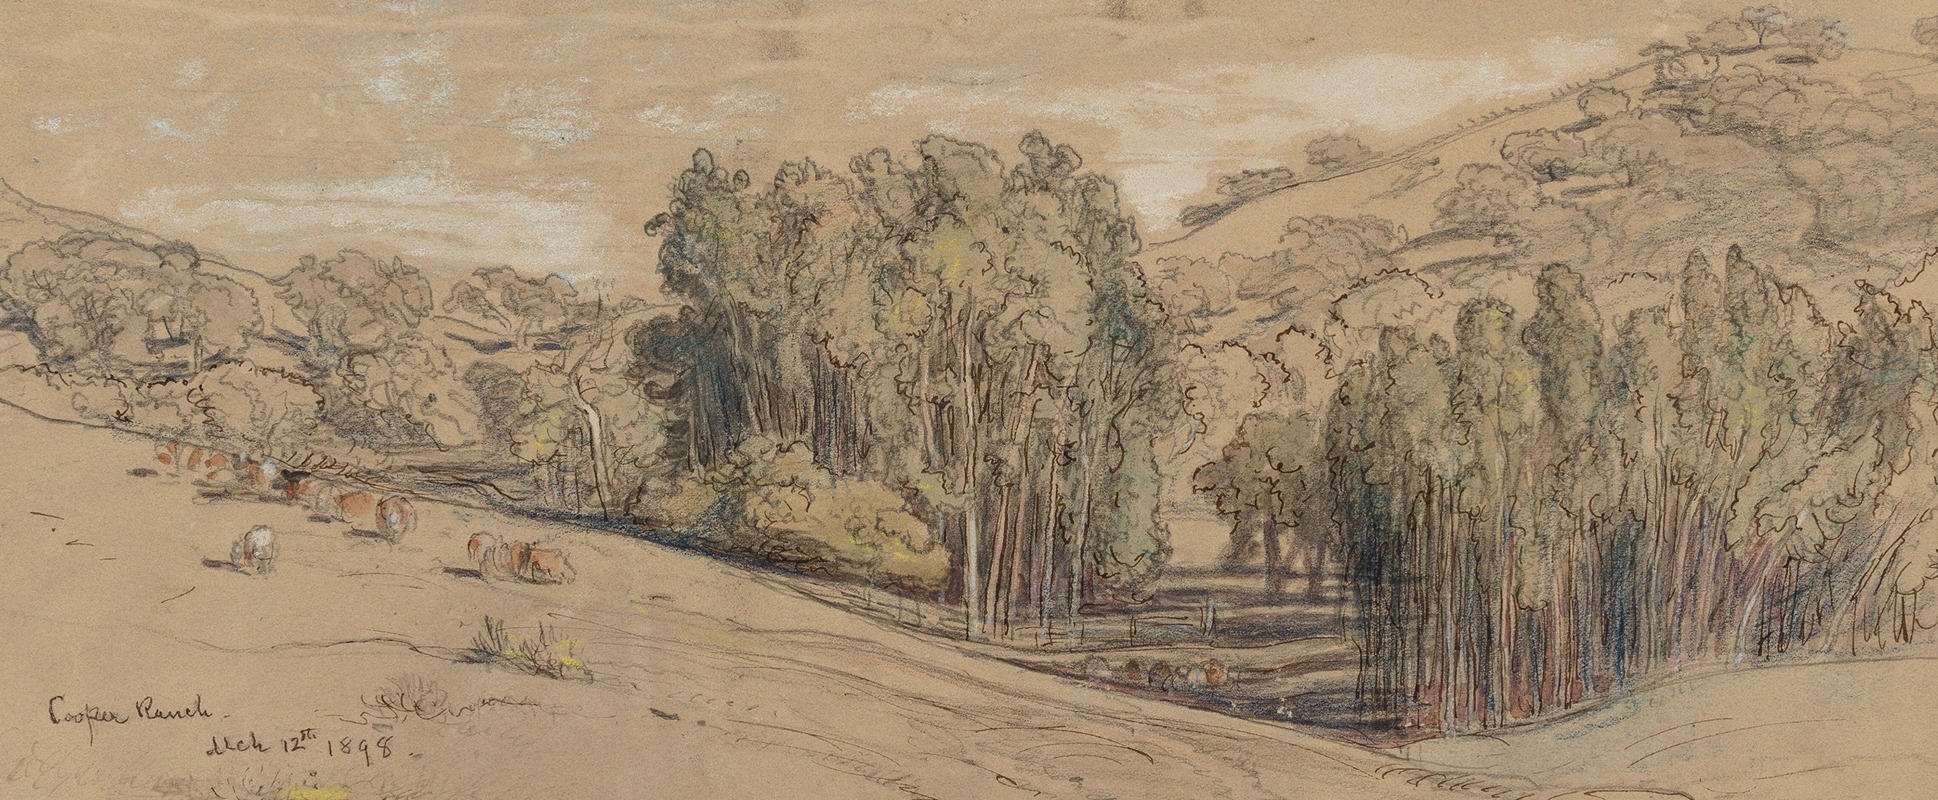 Samuel Colman - Eucalyptus Groves on the Cooper Ranch, Santa Barbara